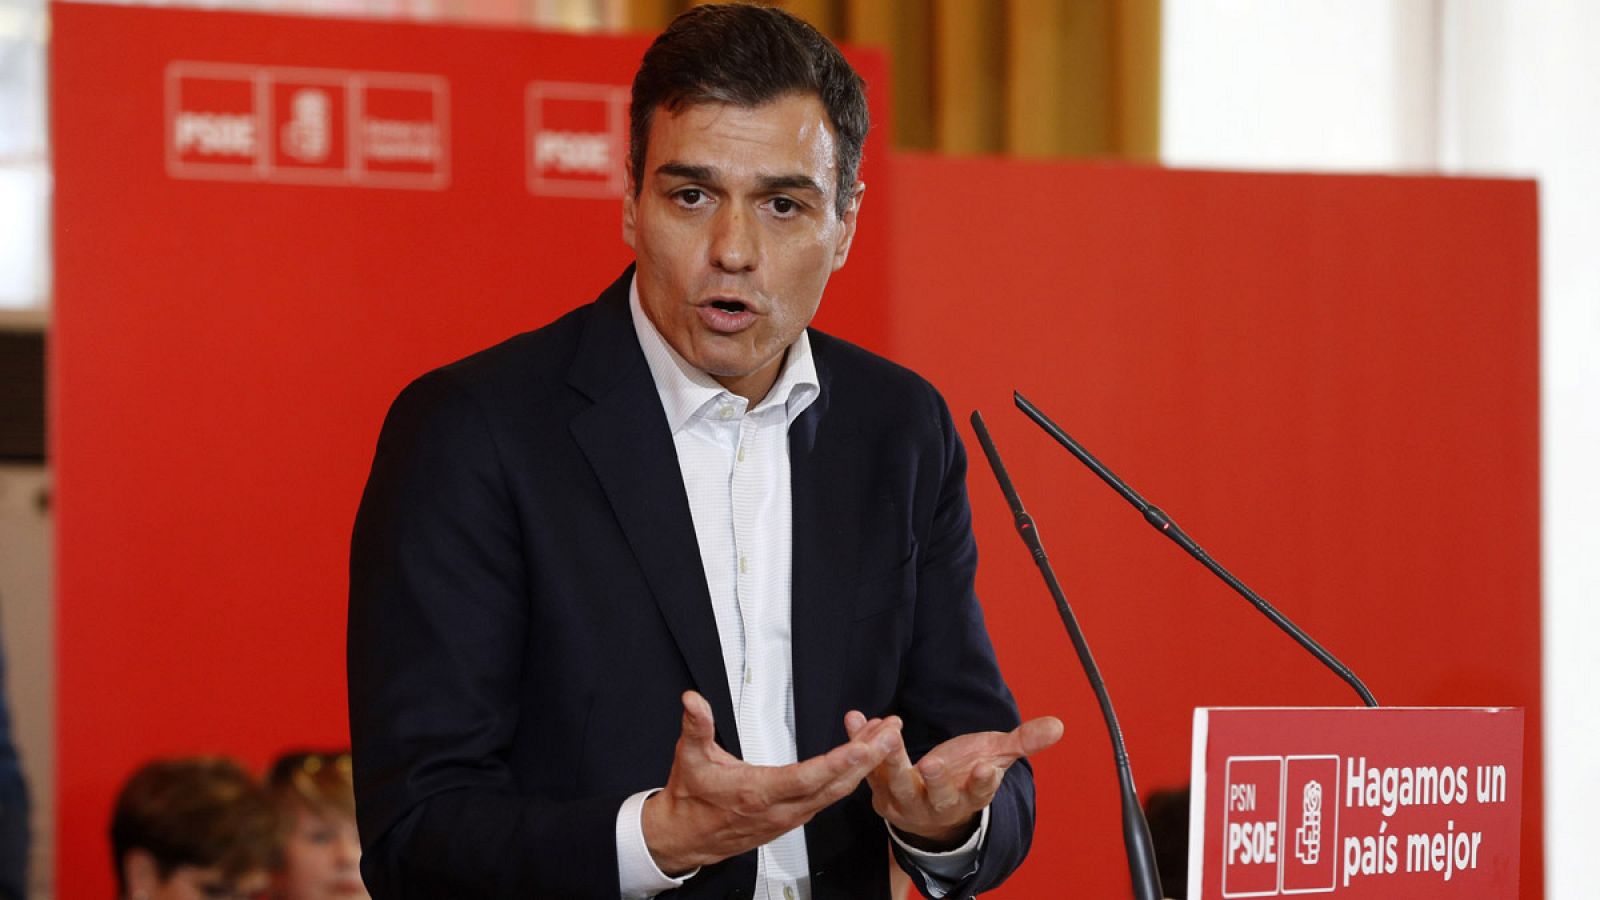 El secretario general del PSOE, Pedro Sánchez, durante su intervención en Pamplona